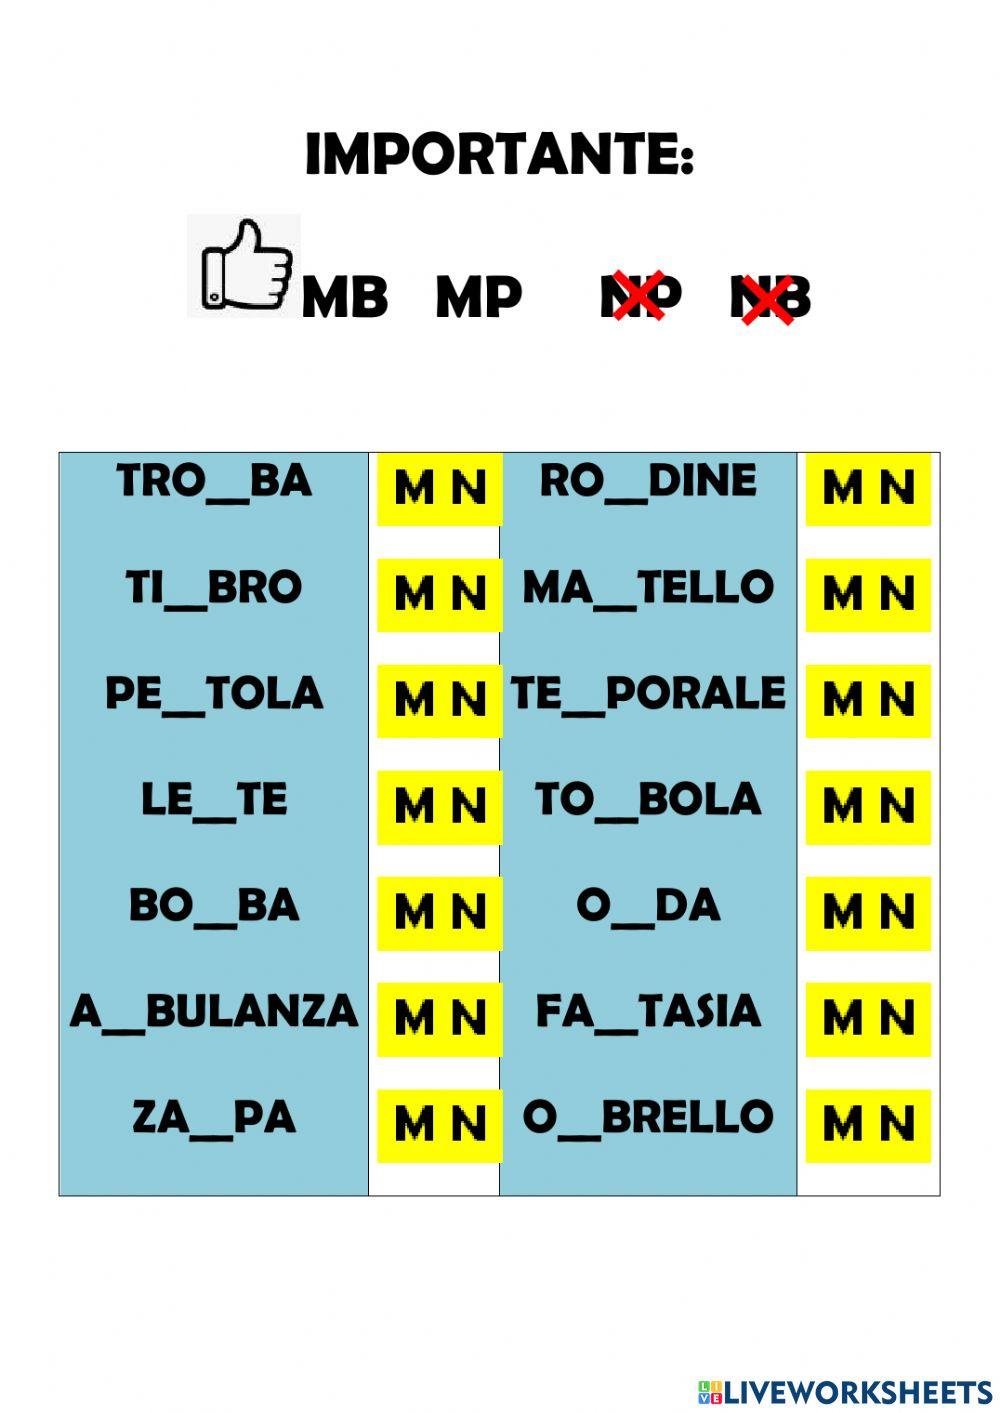 MB e MP